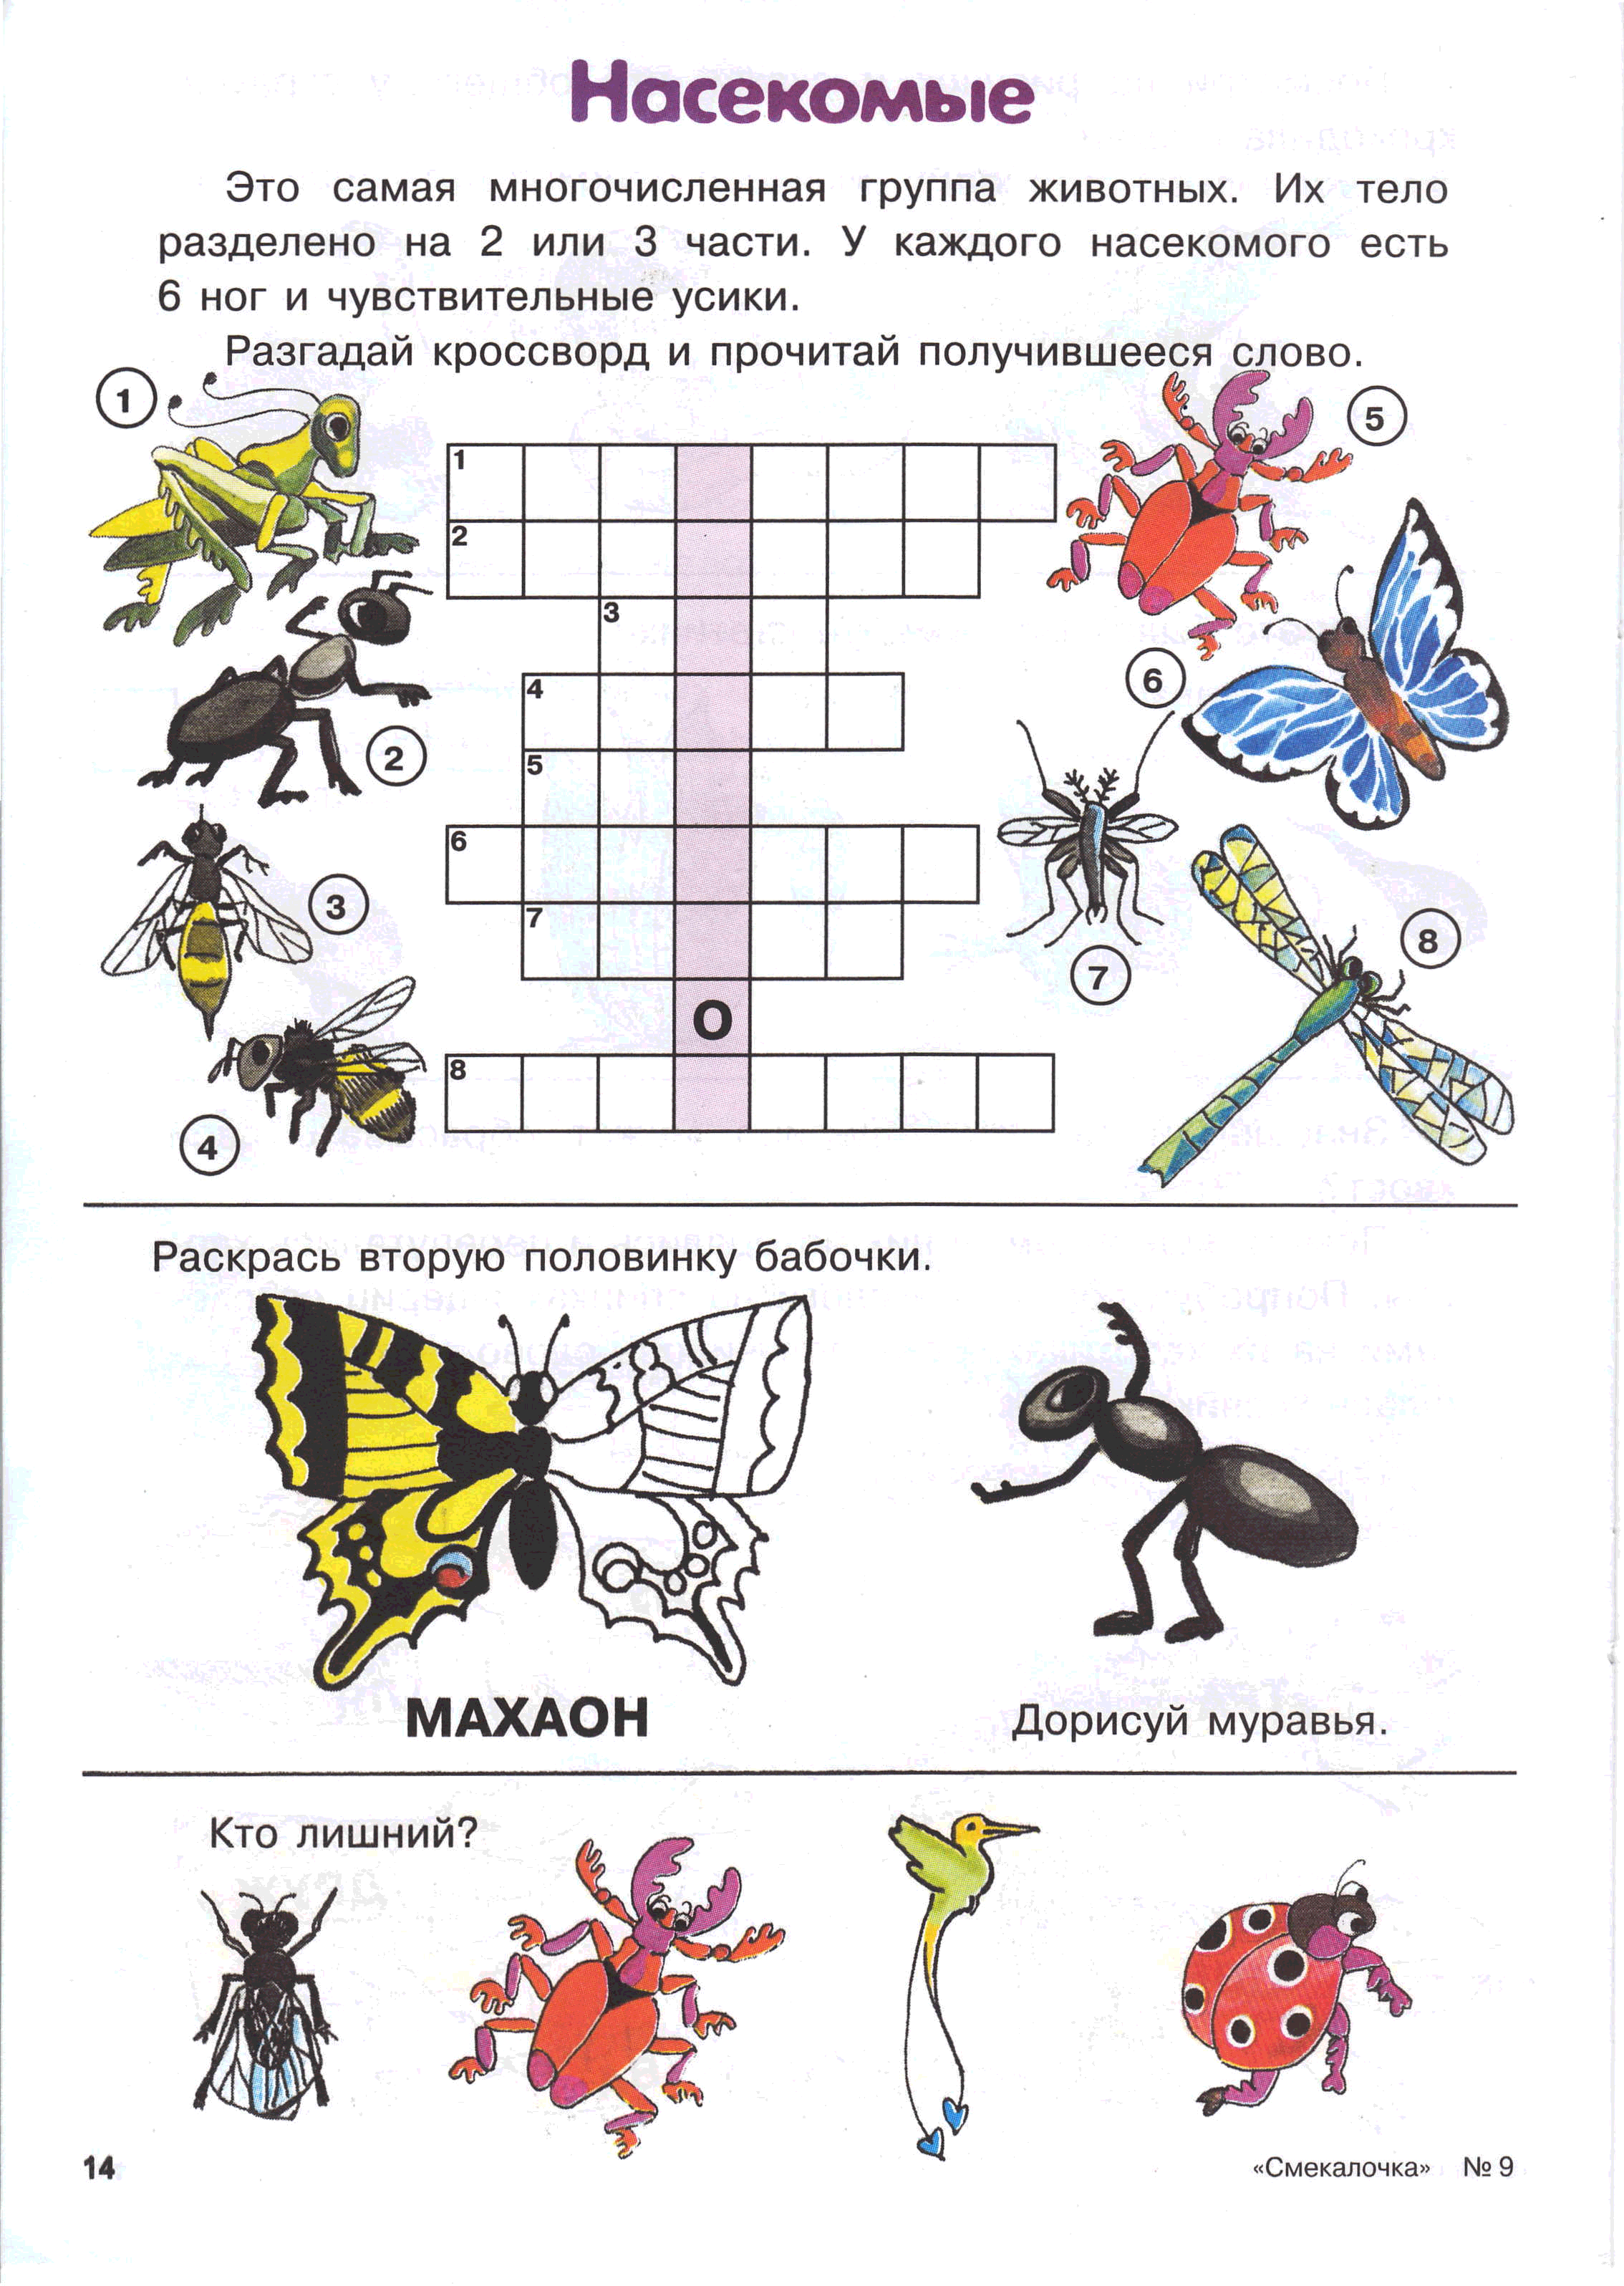 Насекомые для дошкольников подготовительная группа. Насекомые задания для дошкольников. Задания на тему насекомые в подготовительной группе. Насекомые задания для детей 6-7 лет. Задания длядля дошкольников насекомые.